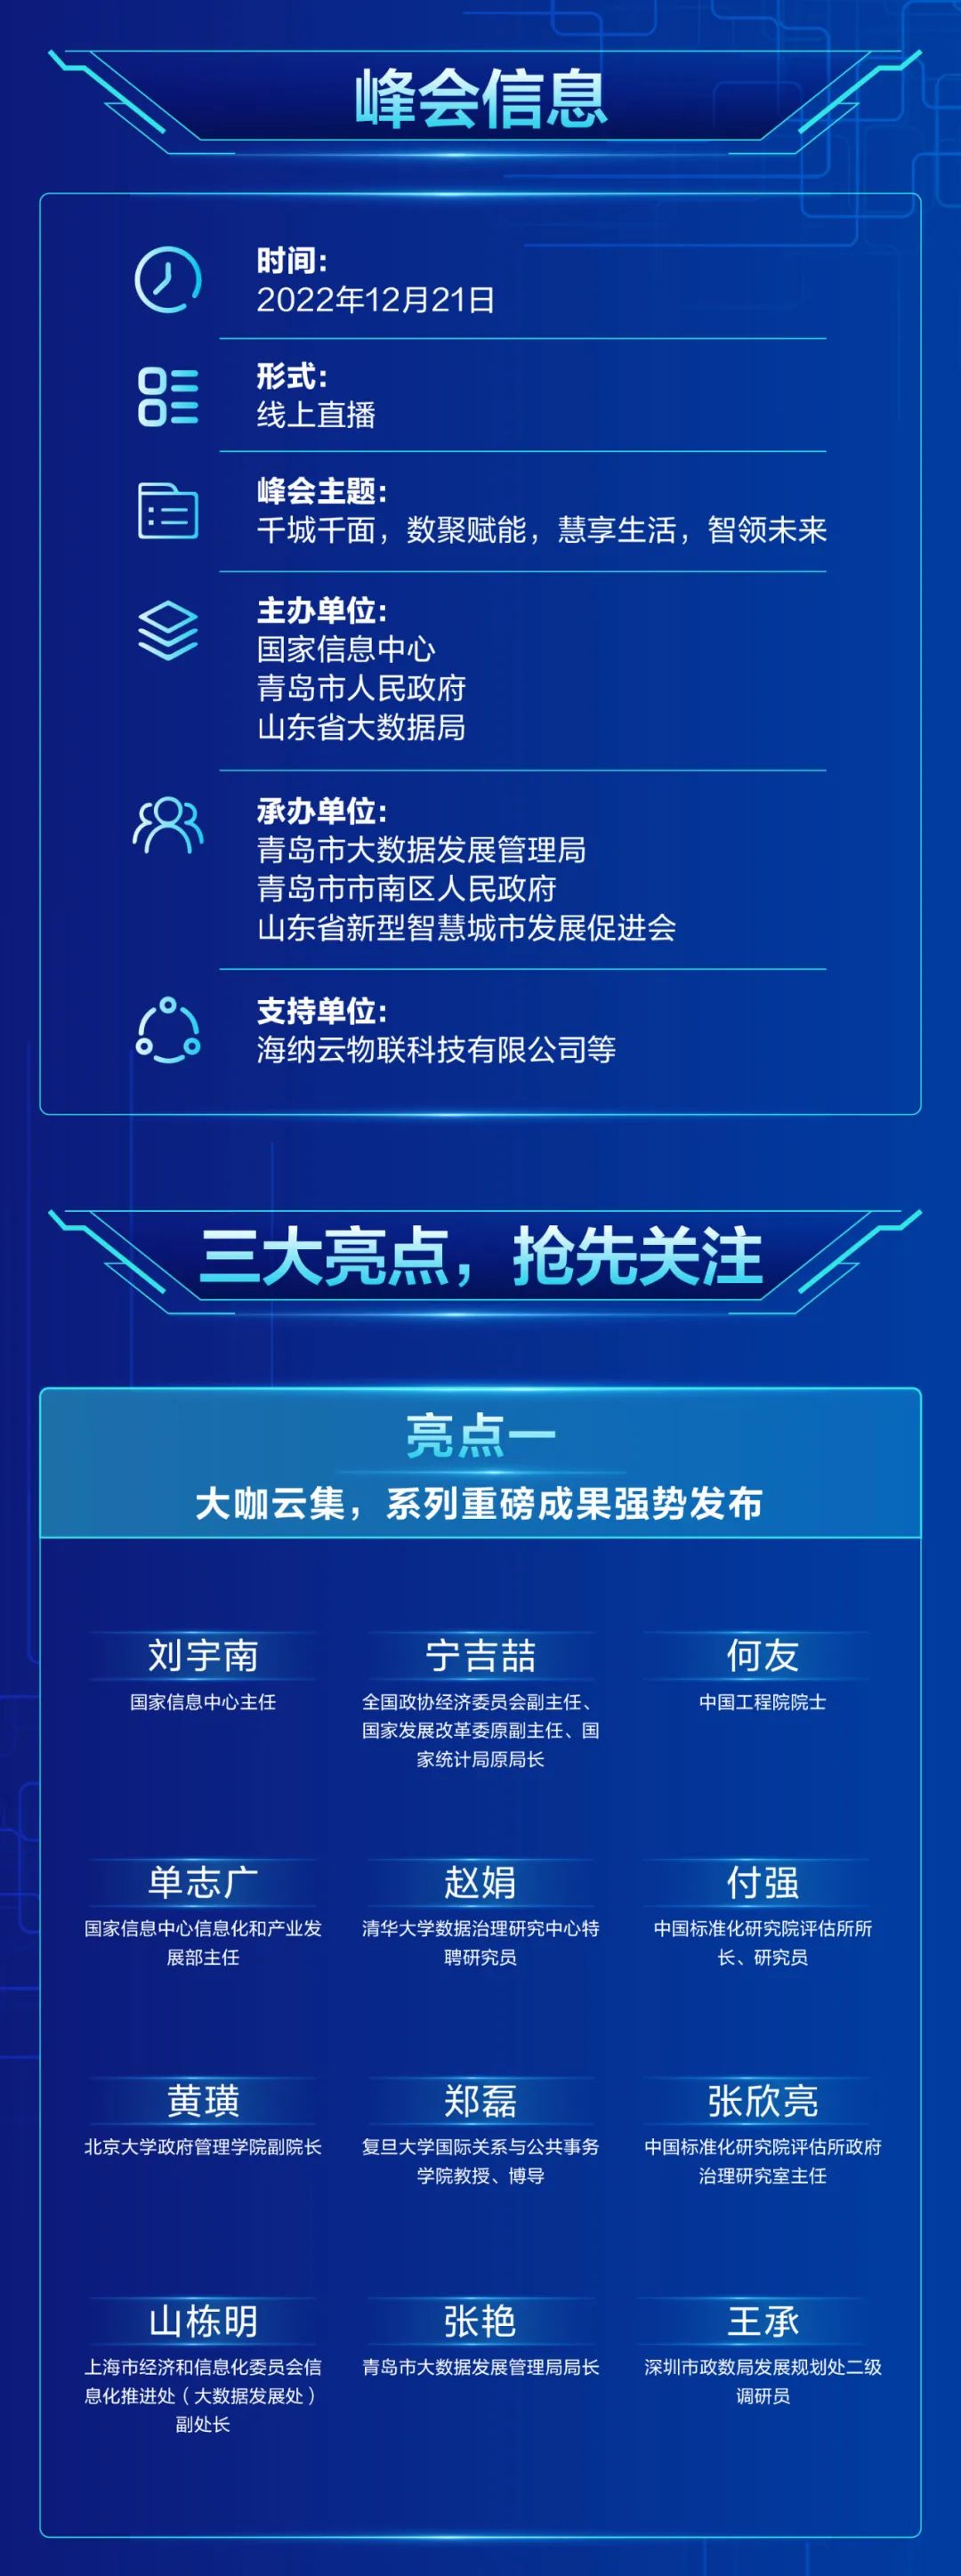 作为主论坛唯一企业代表，海纳云将亮相“第二届中国新型智慧城市建设峰会”